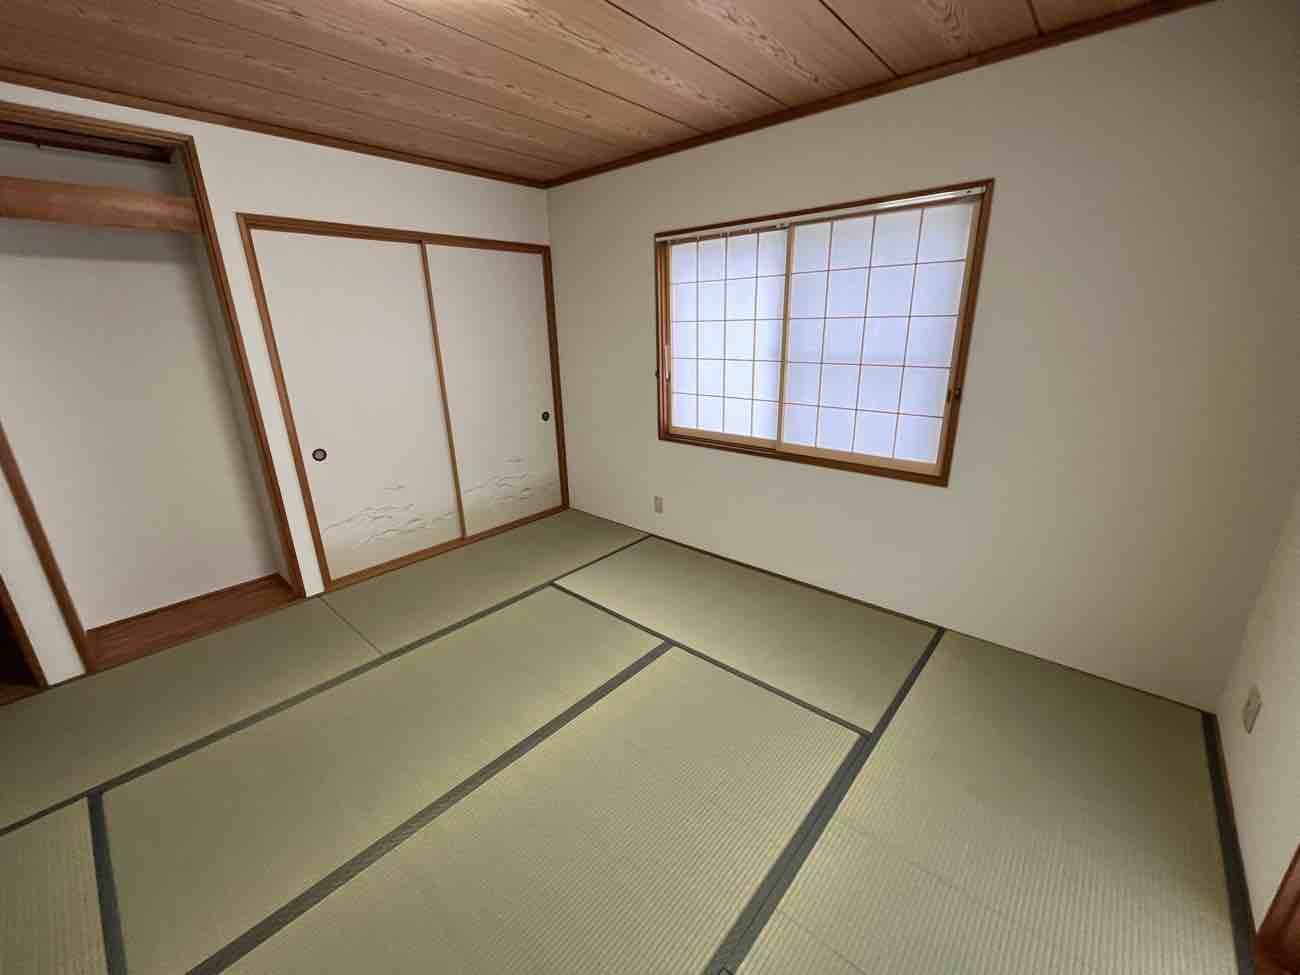 【埼玉県三郷市】T様邸和室畳交換スタイロ断熱施工内装工事が完了しました。 画像